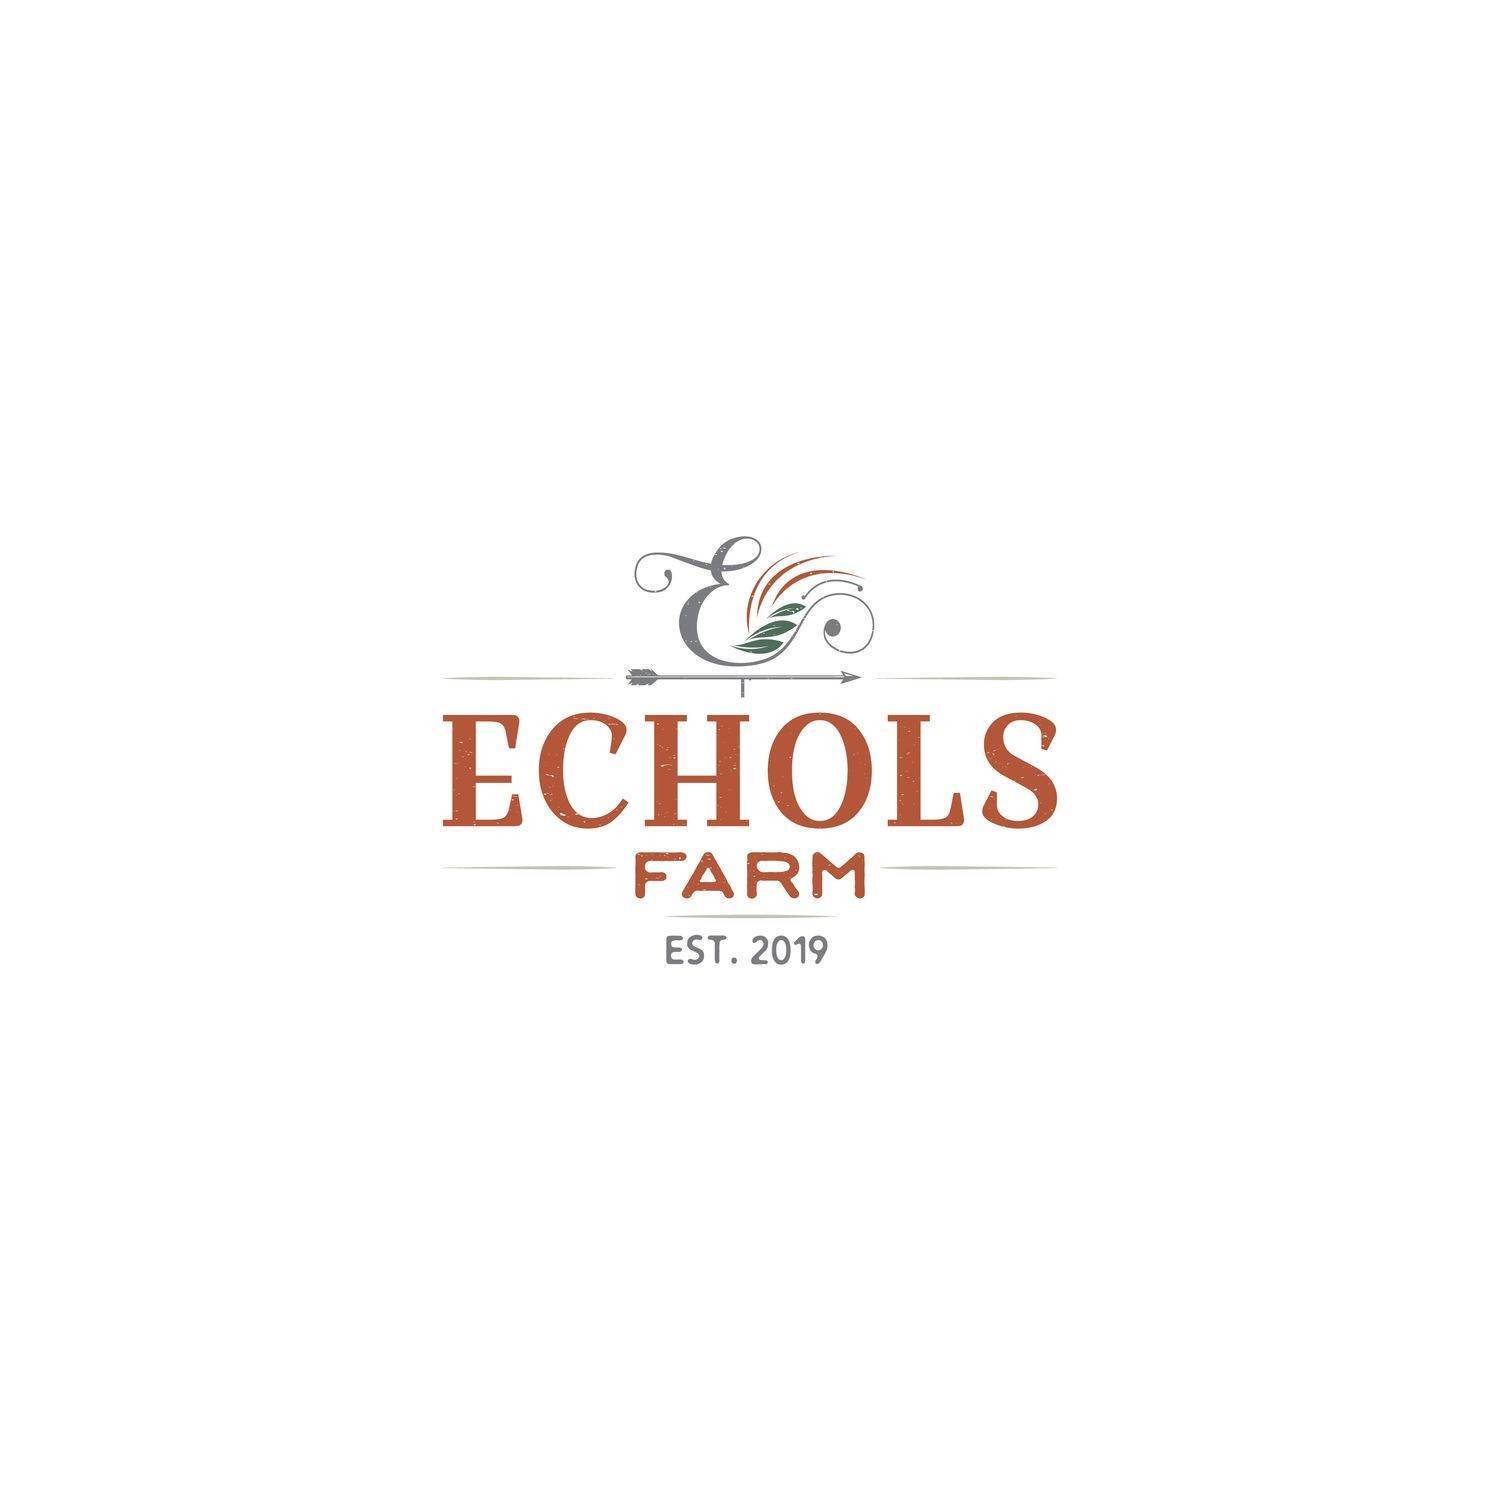 6. Echols Farm gebouw op 4511 Macland Road, Hiram, GA 30141